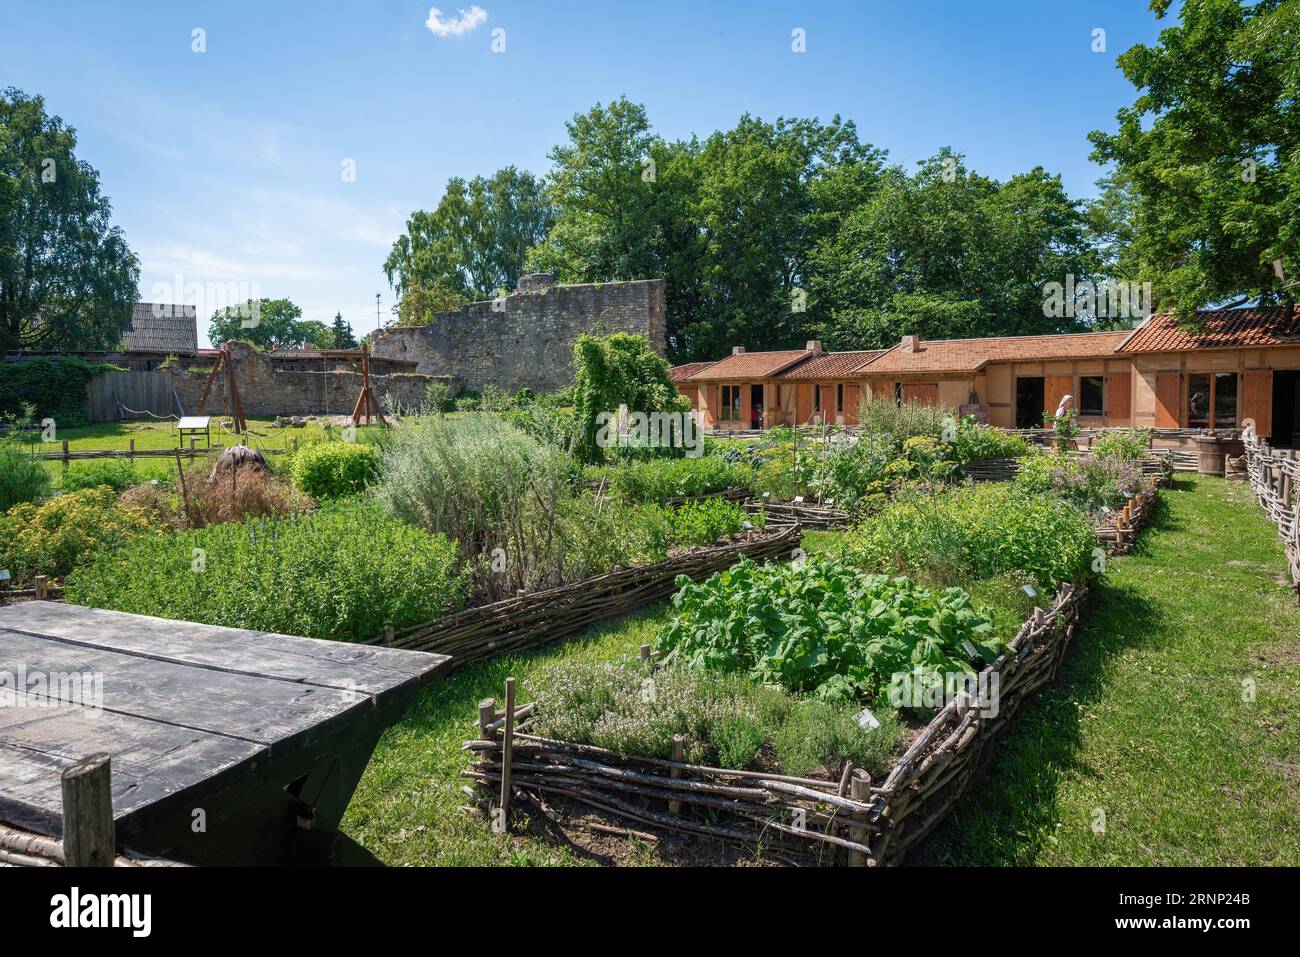 Jardin potager médiéval du château de Cesis zone d'activités médiévales - Cesis, Lettonie Banque D'Images